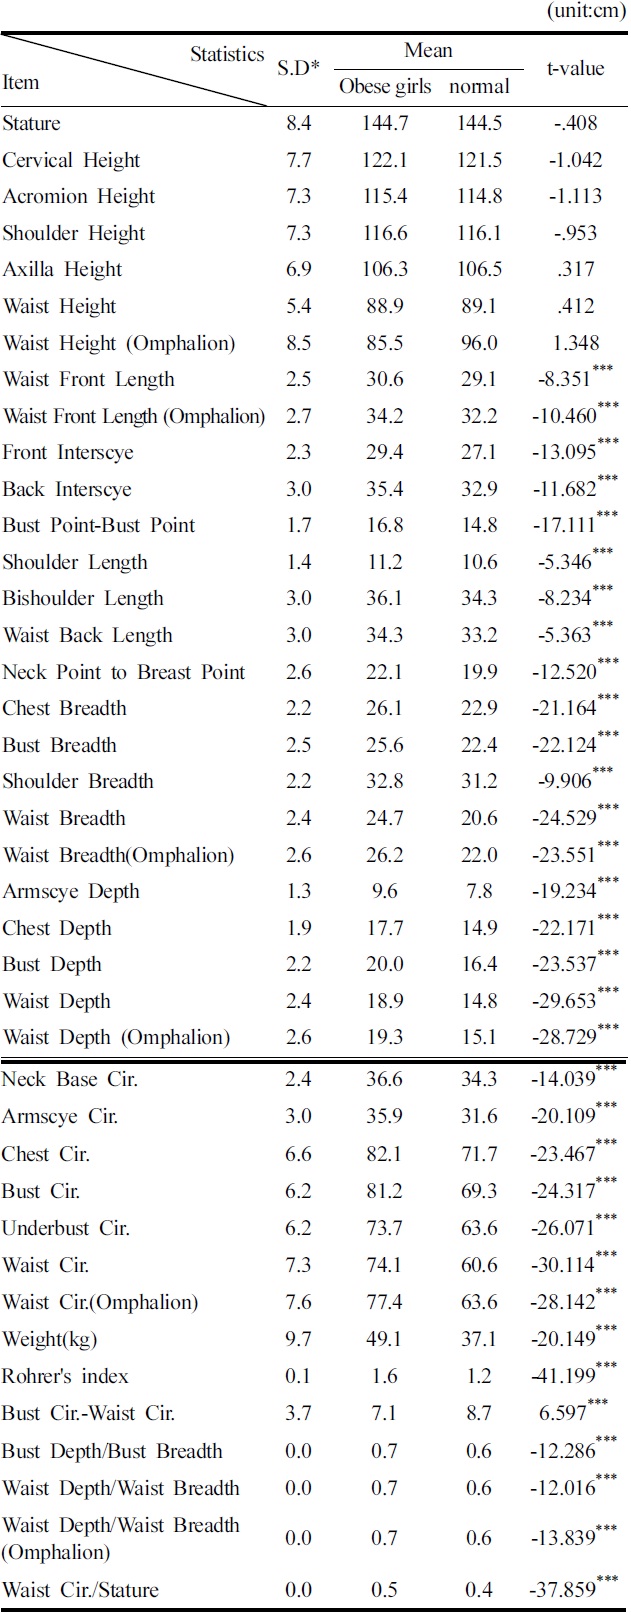 Descriptive statistics of upper-body measurements